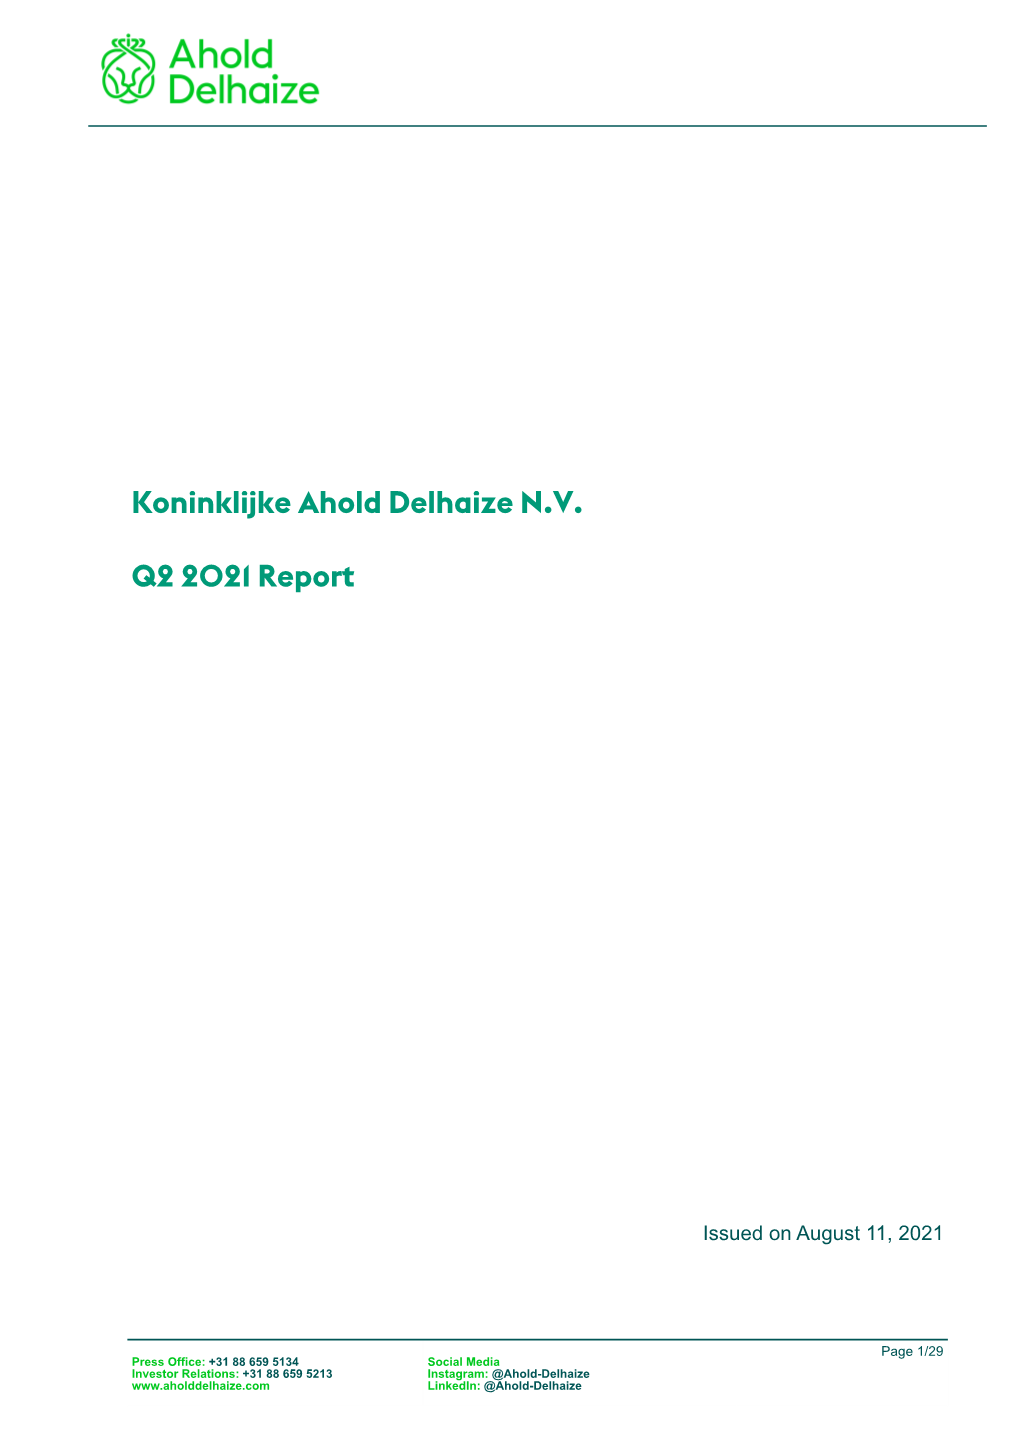 Koninklijke Ahold Delhaize N.V. Q2 2021 Report